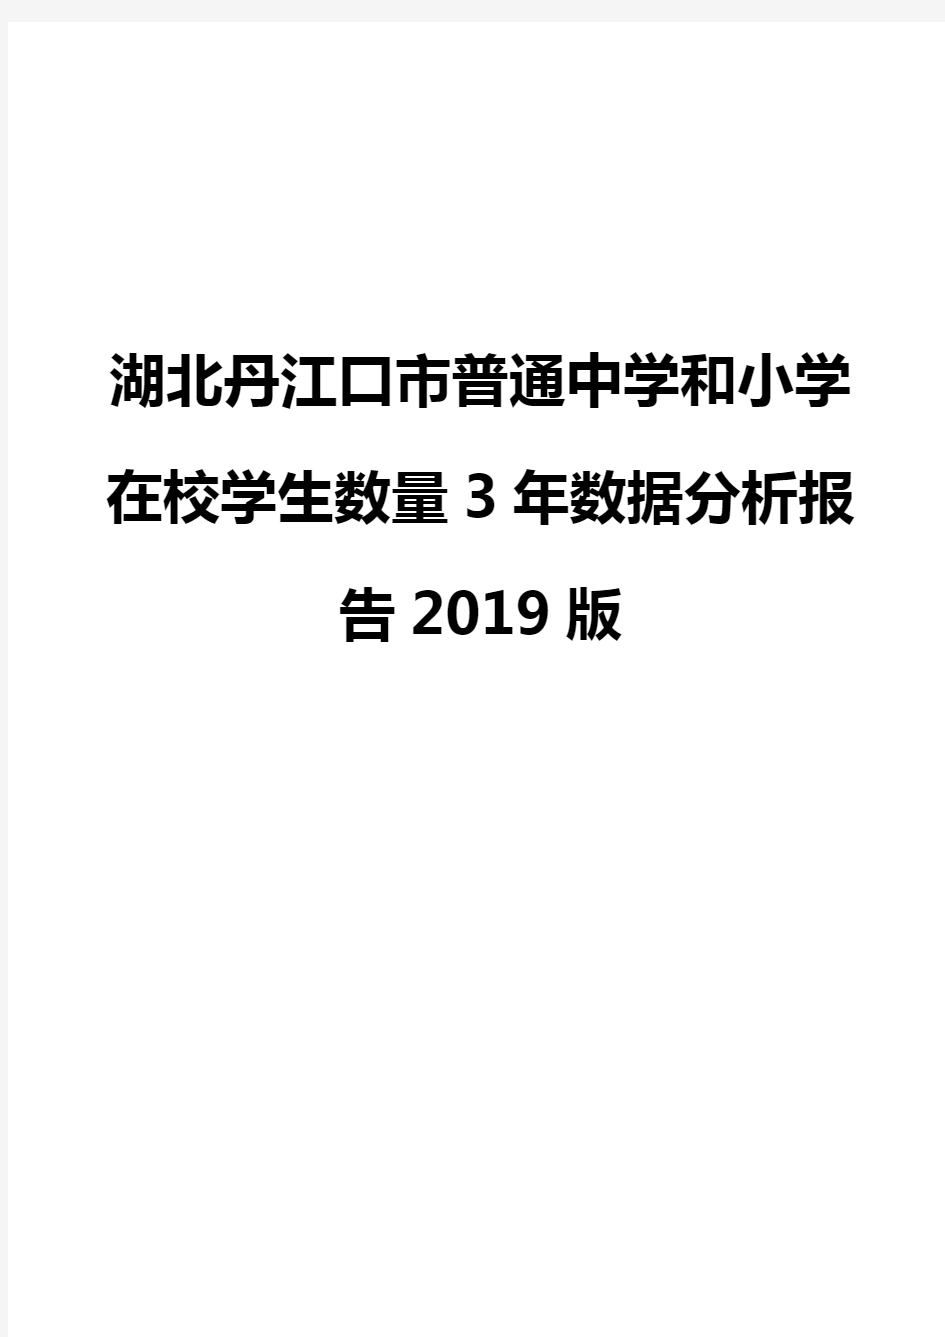 湖北丹江口市普通中学和小学在校学生数量3年数据分析报告2019版